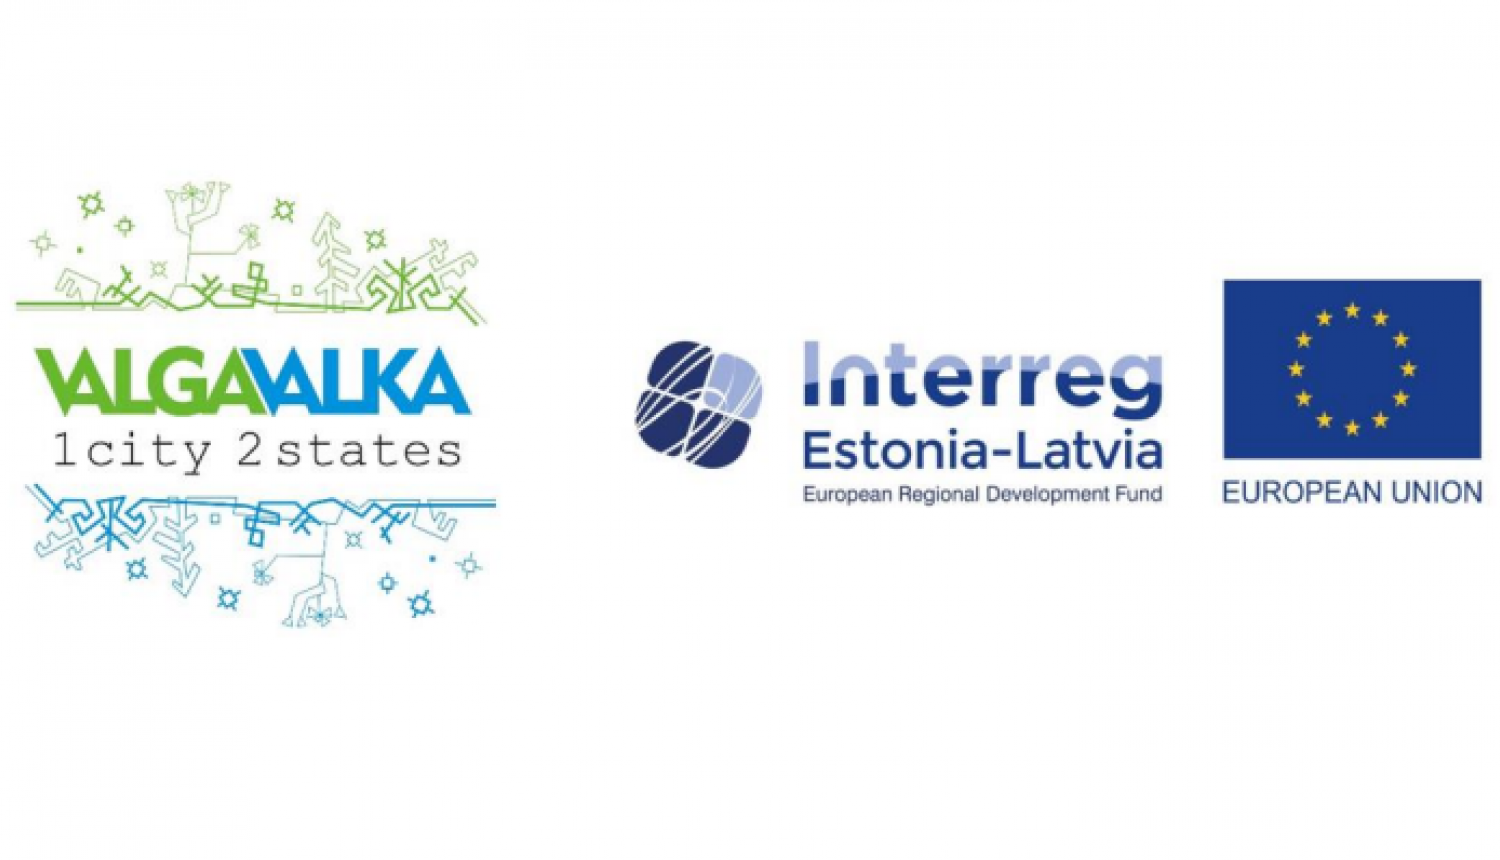 valkavalga-interreg-estonia-latvia-es logo